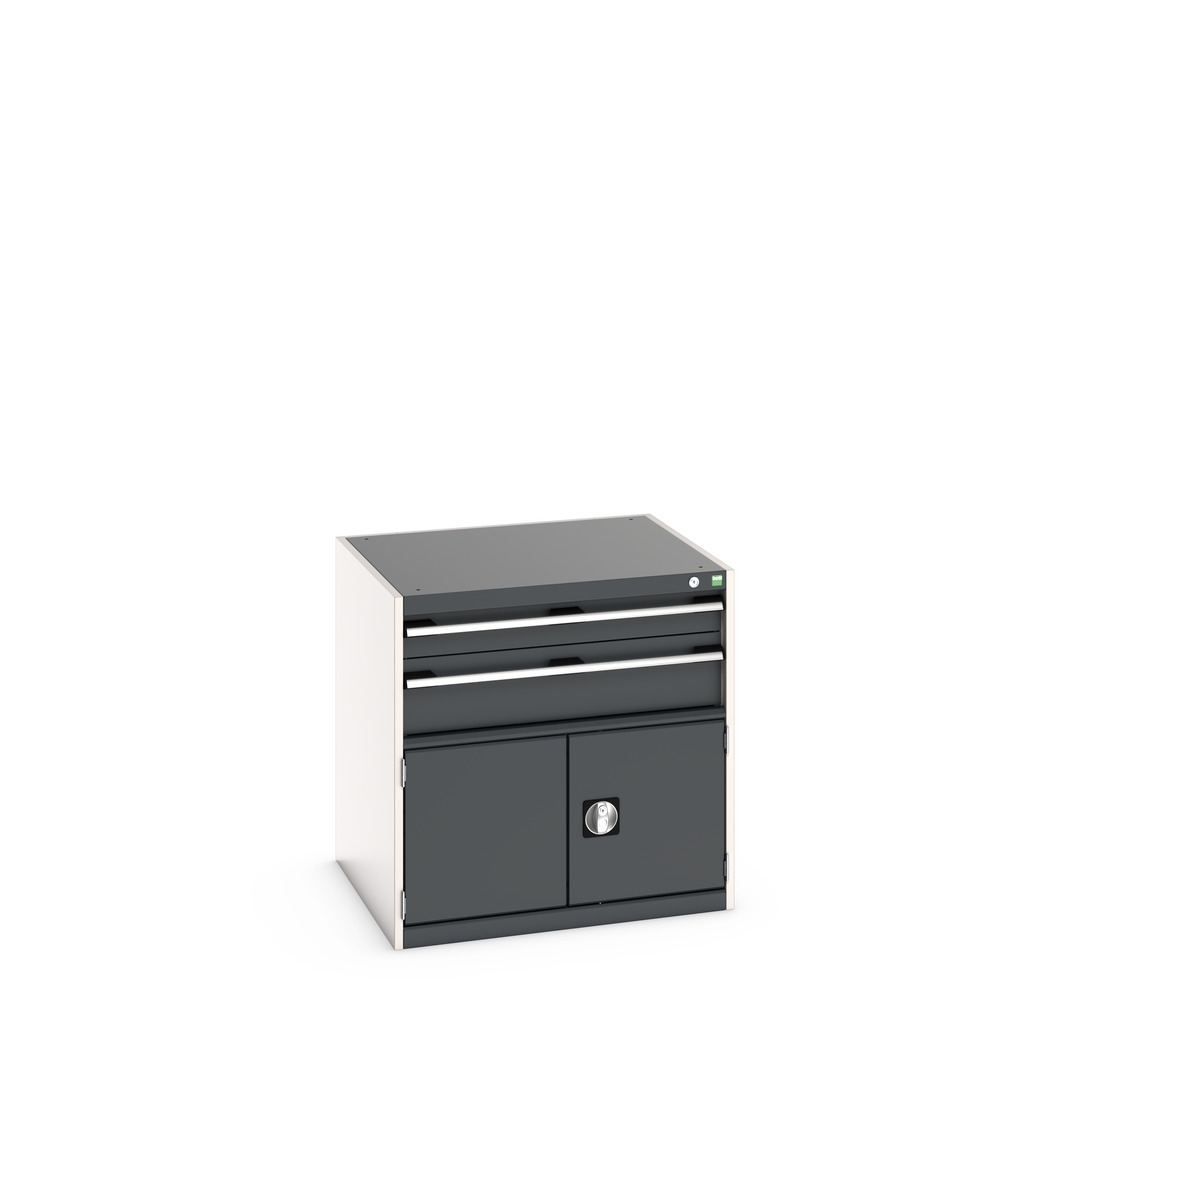 40028098. - cubio drawer-door cabinet